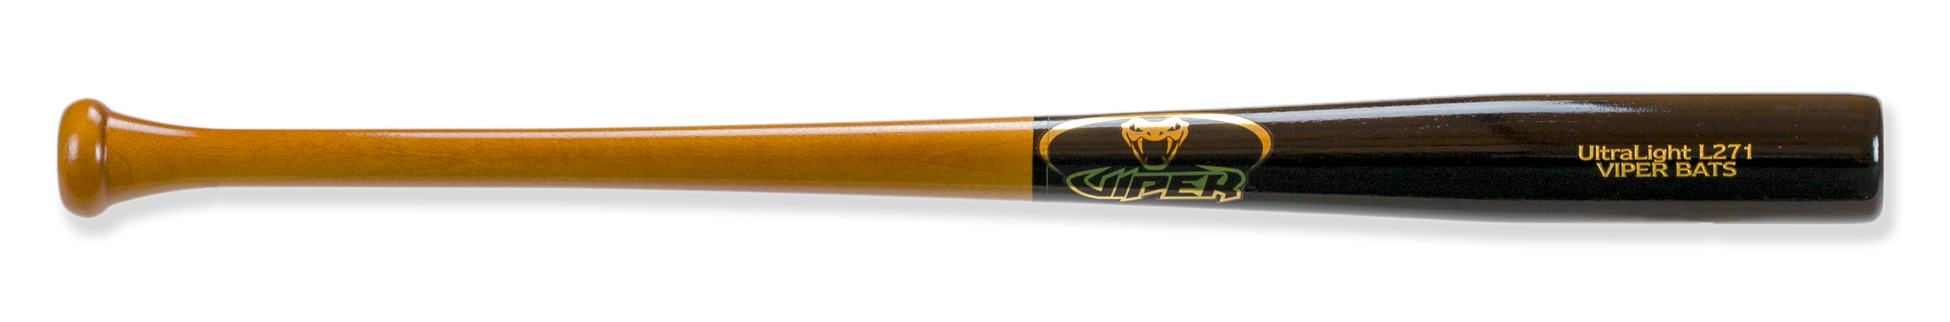 in stock l271 ultralight wood bat